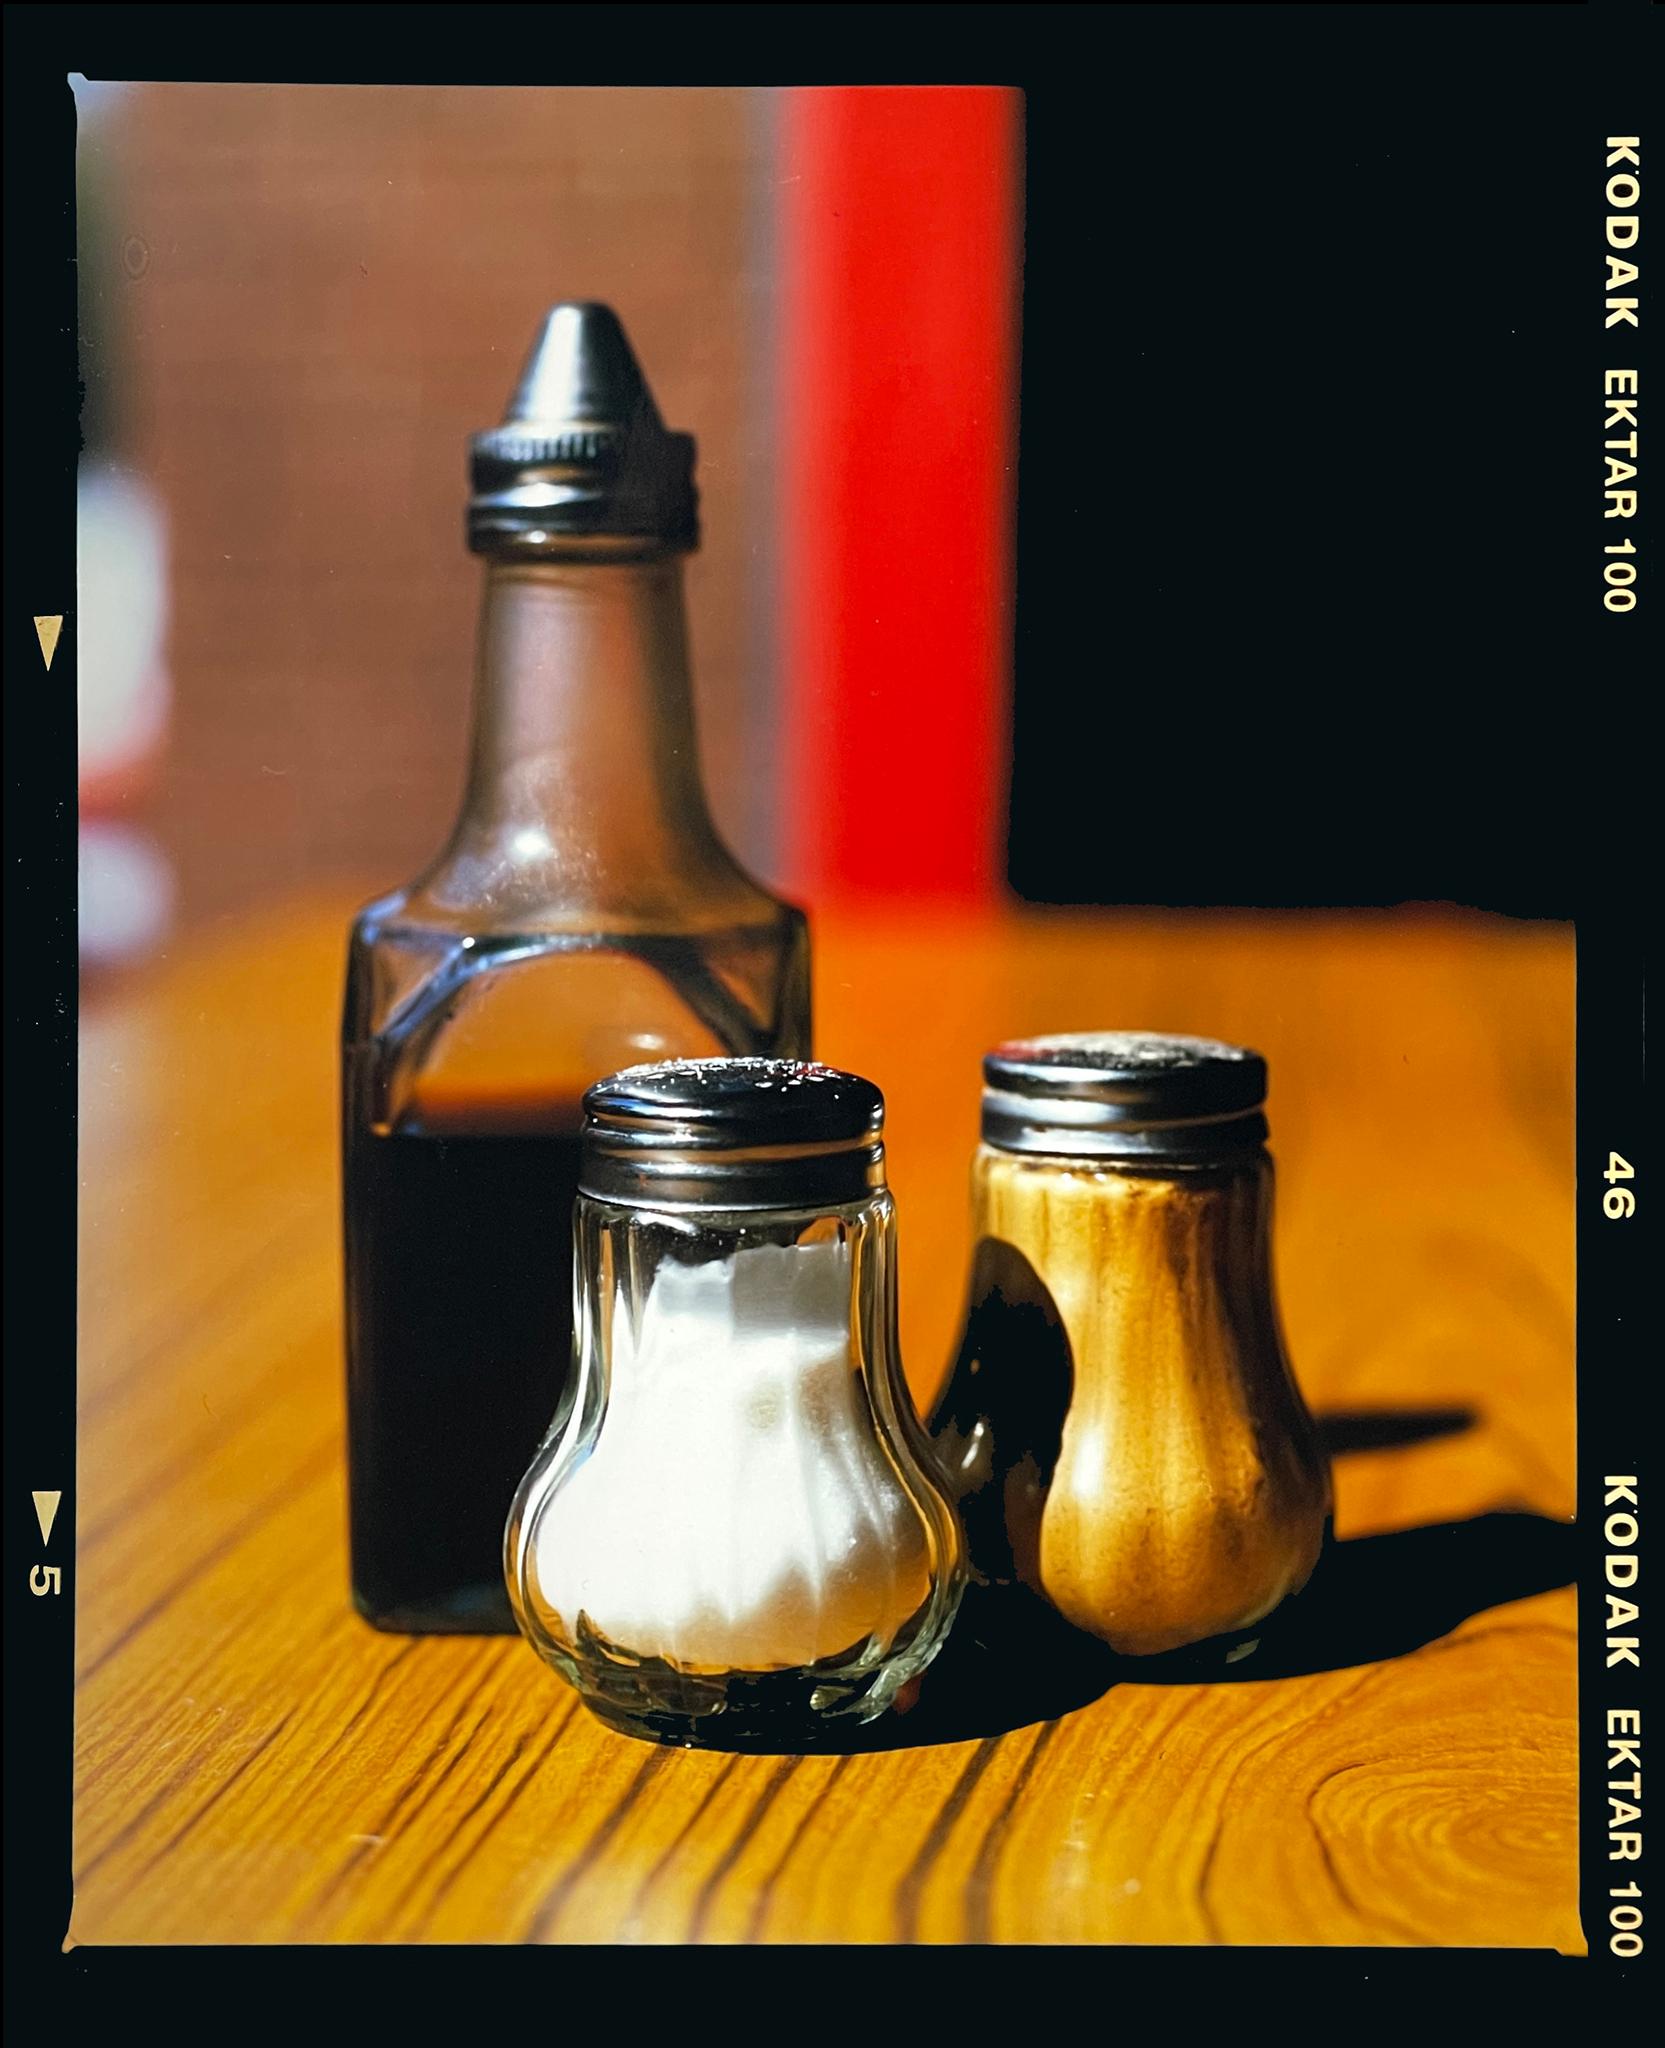 Still-Life Photograph Richard Heeps - Salt, Pepper & Vinegar, Clacton-on-Sea - Photographie de nature morte en couleur